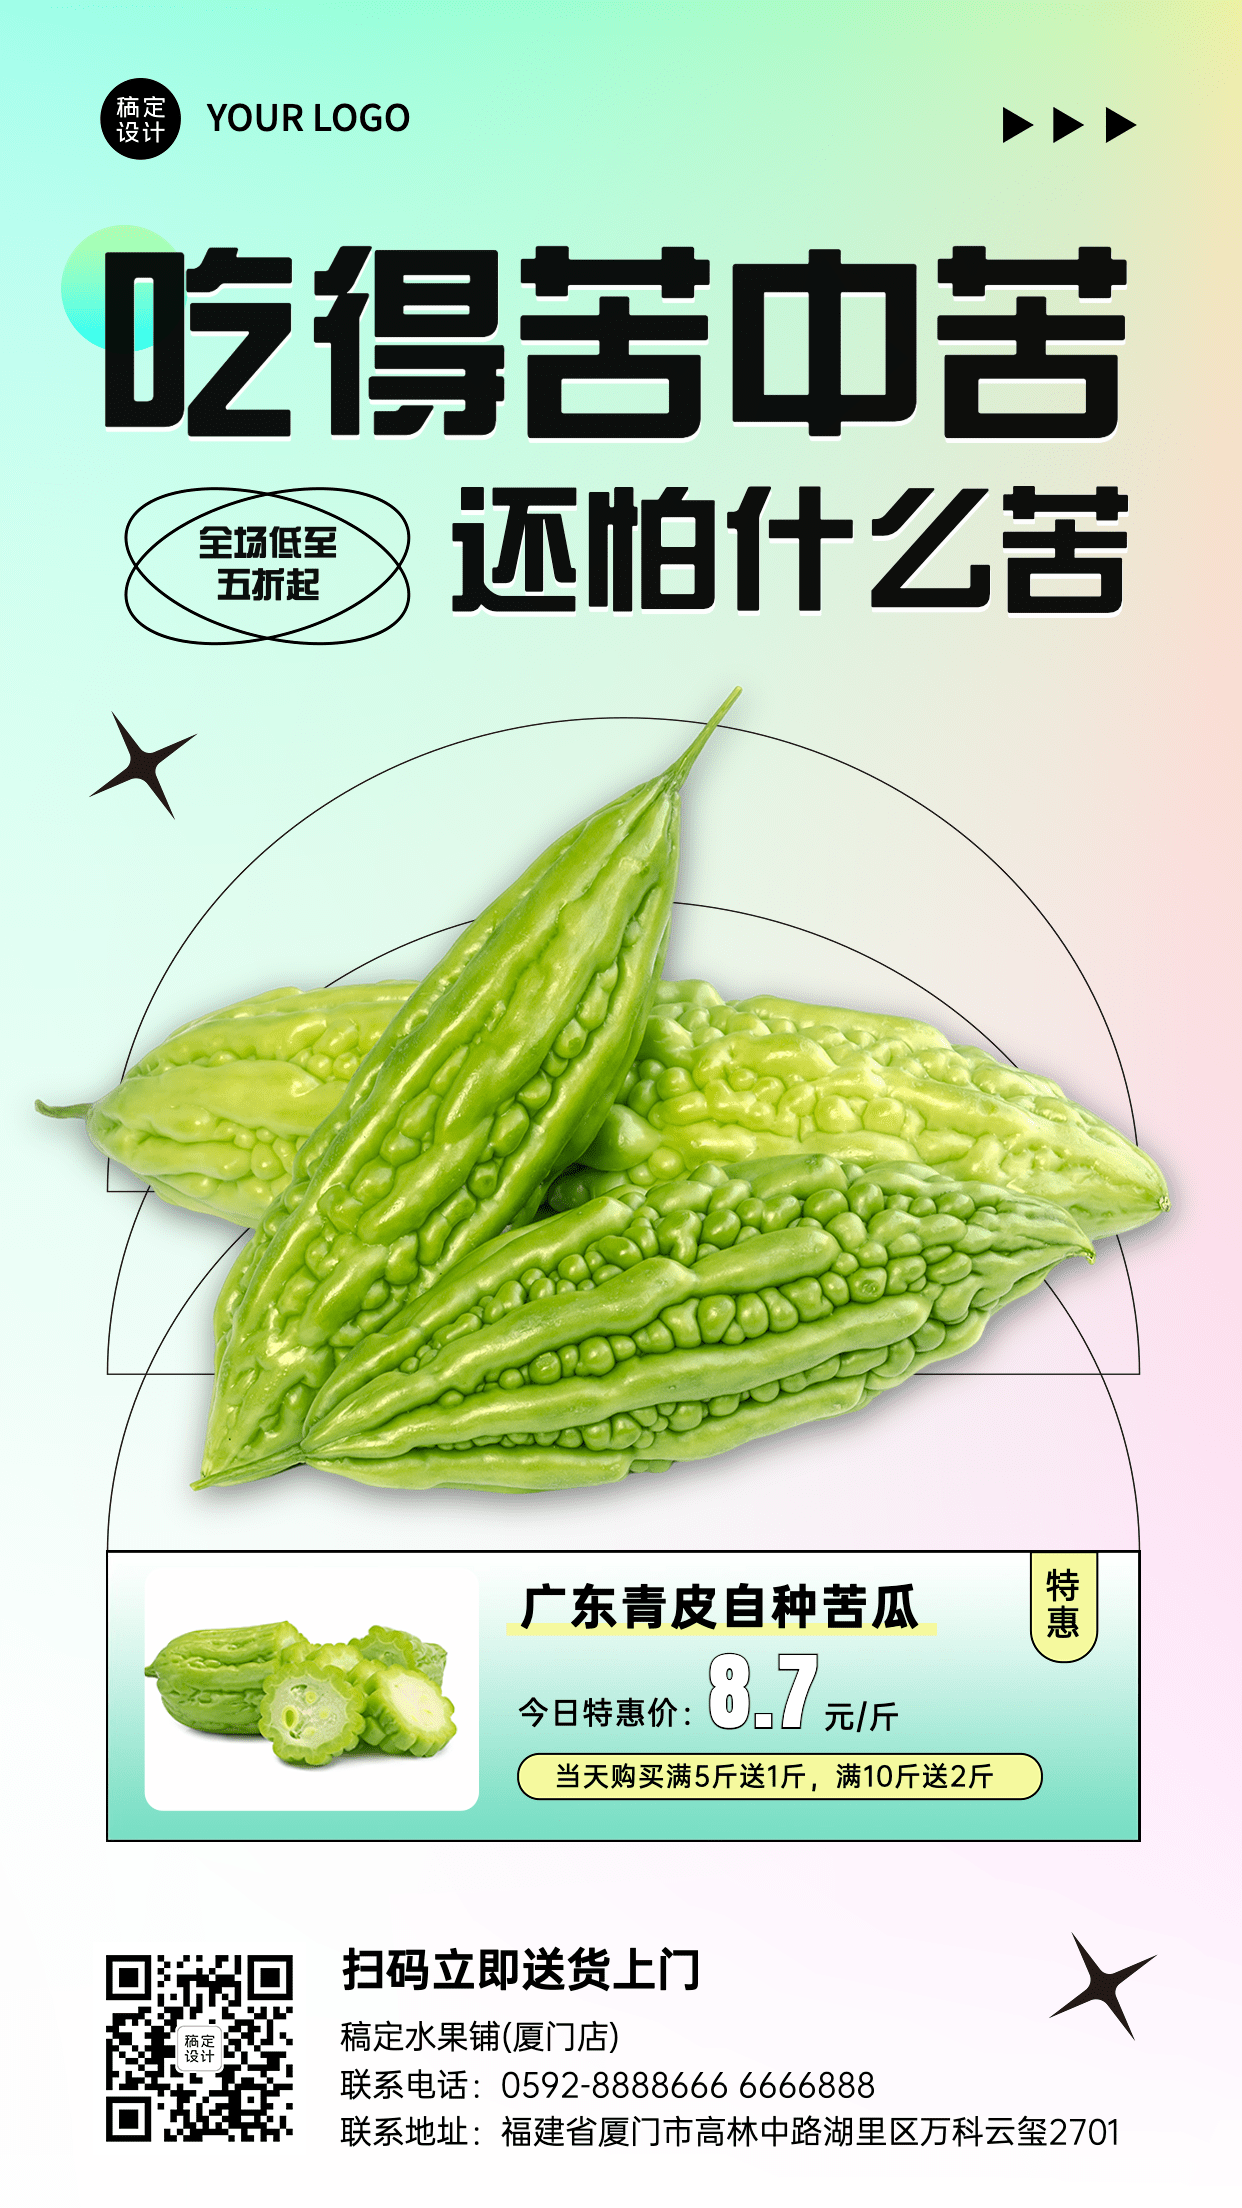 弥散风餐饮蔬菜苦瓜产品展示营销活动手机海报